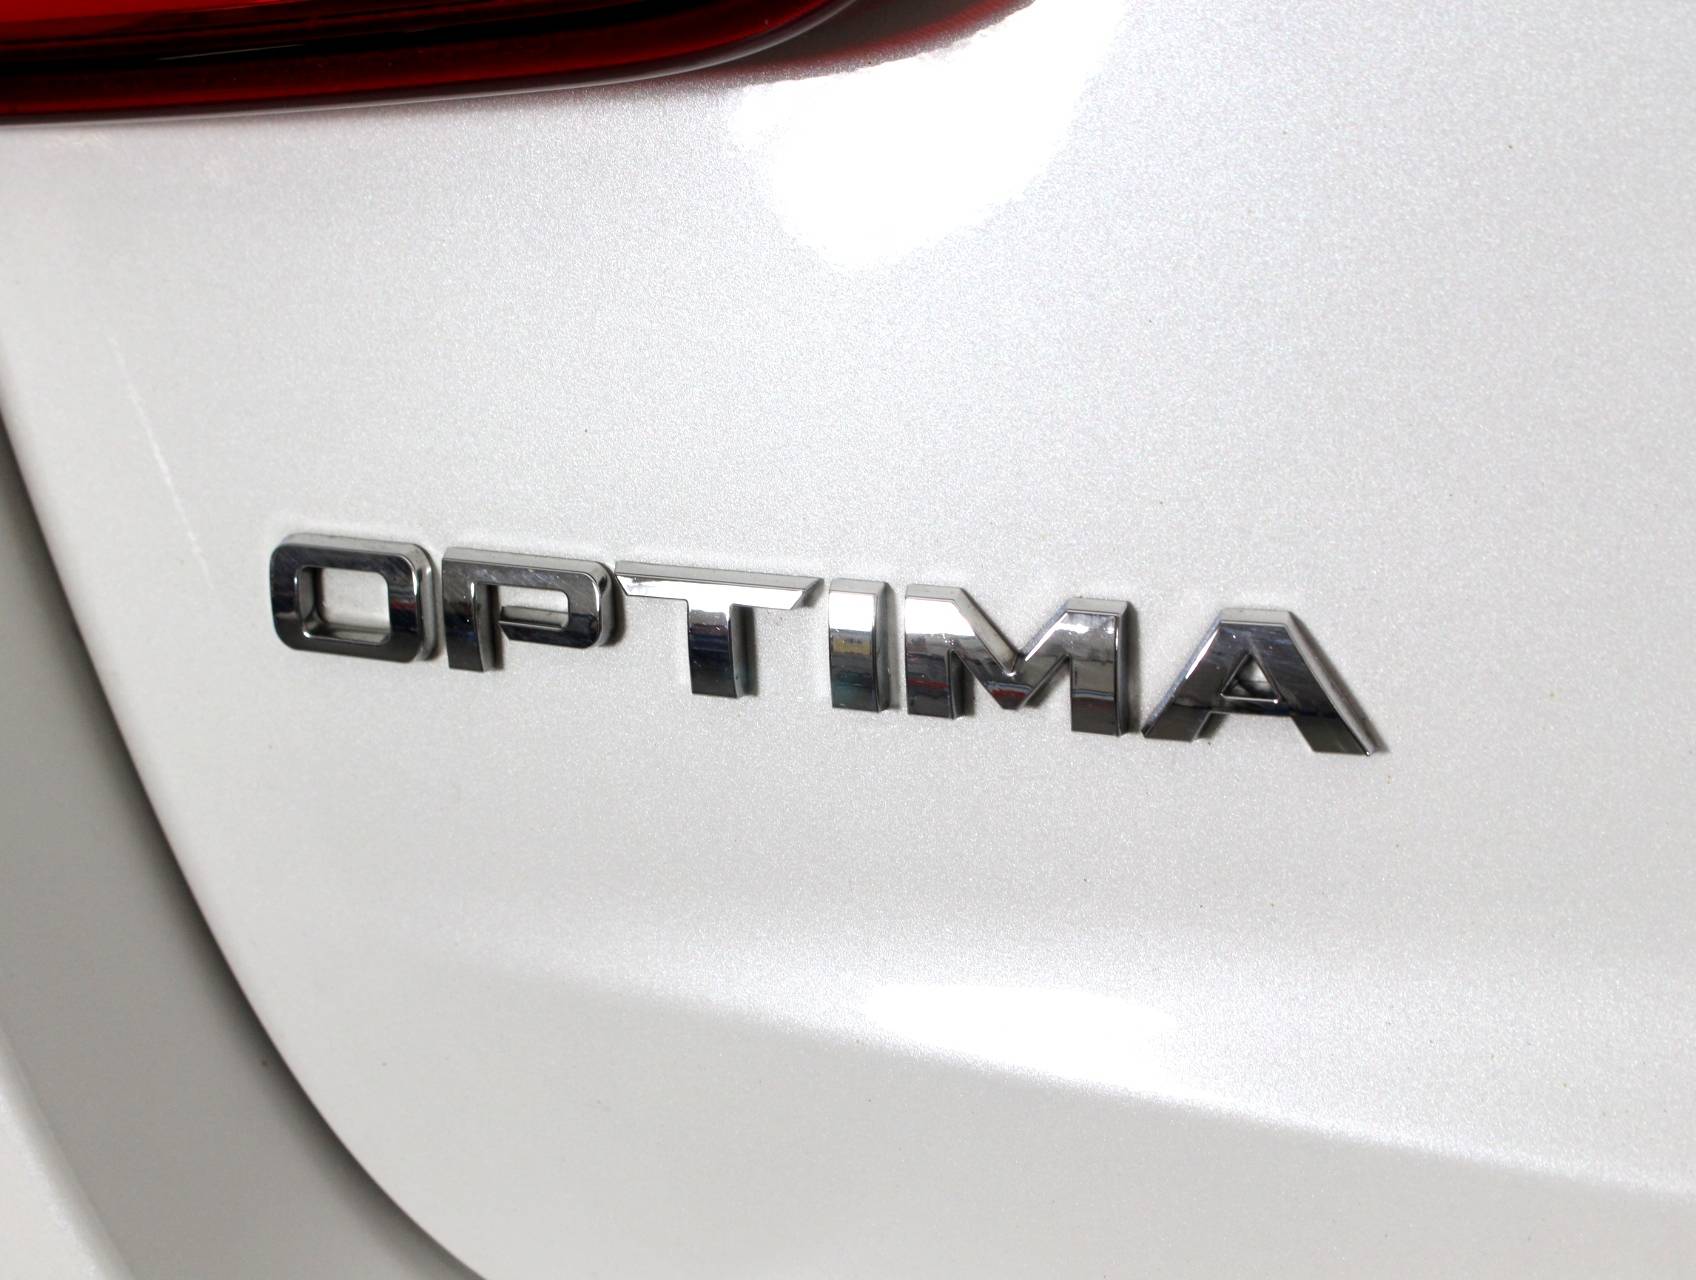 Florida Fine Cars - Used KIA OPTIMA 2015 MARGATE Sx Turbo